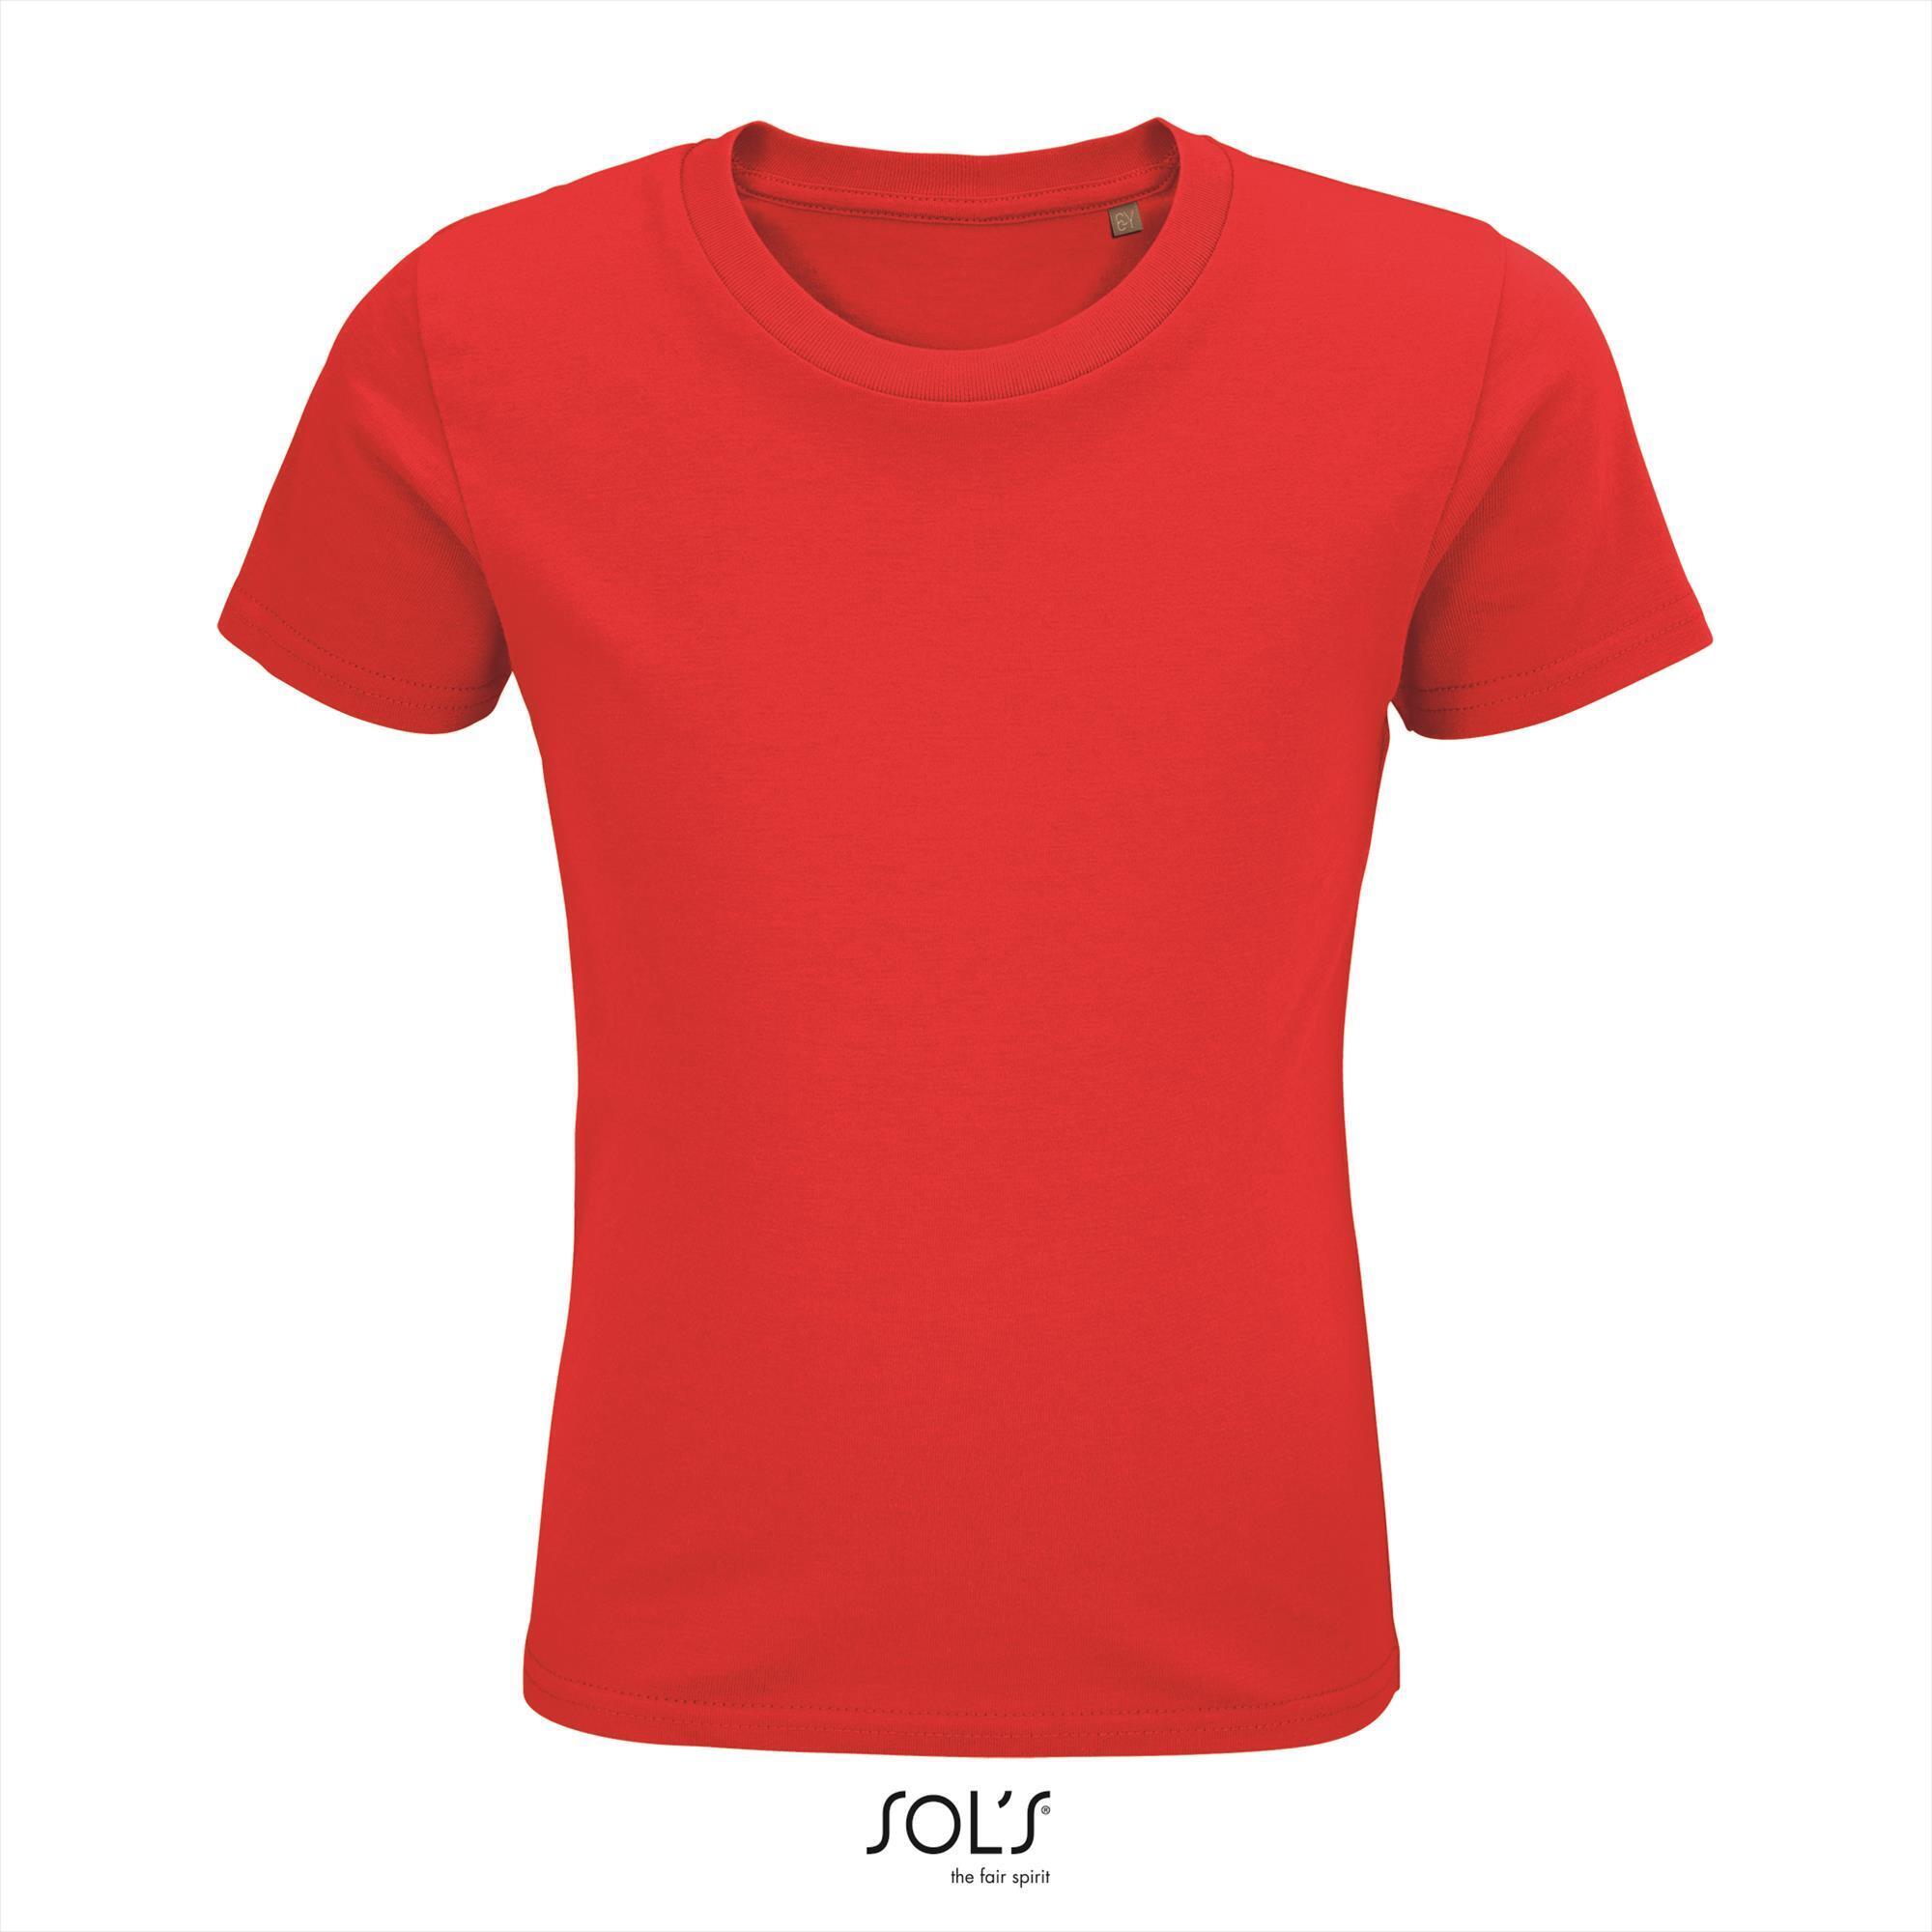 Kinder t-shirt rood biologisch katoen ronde hals